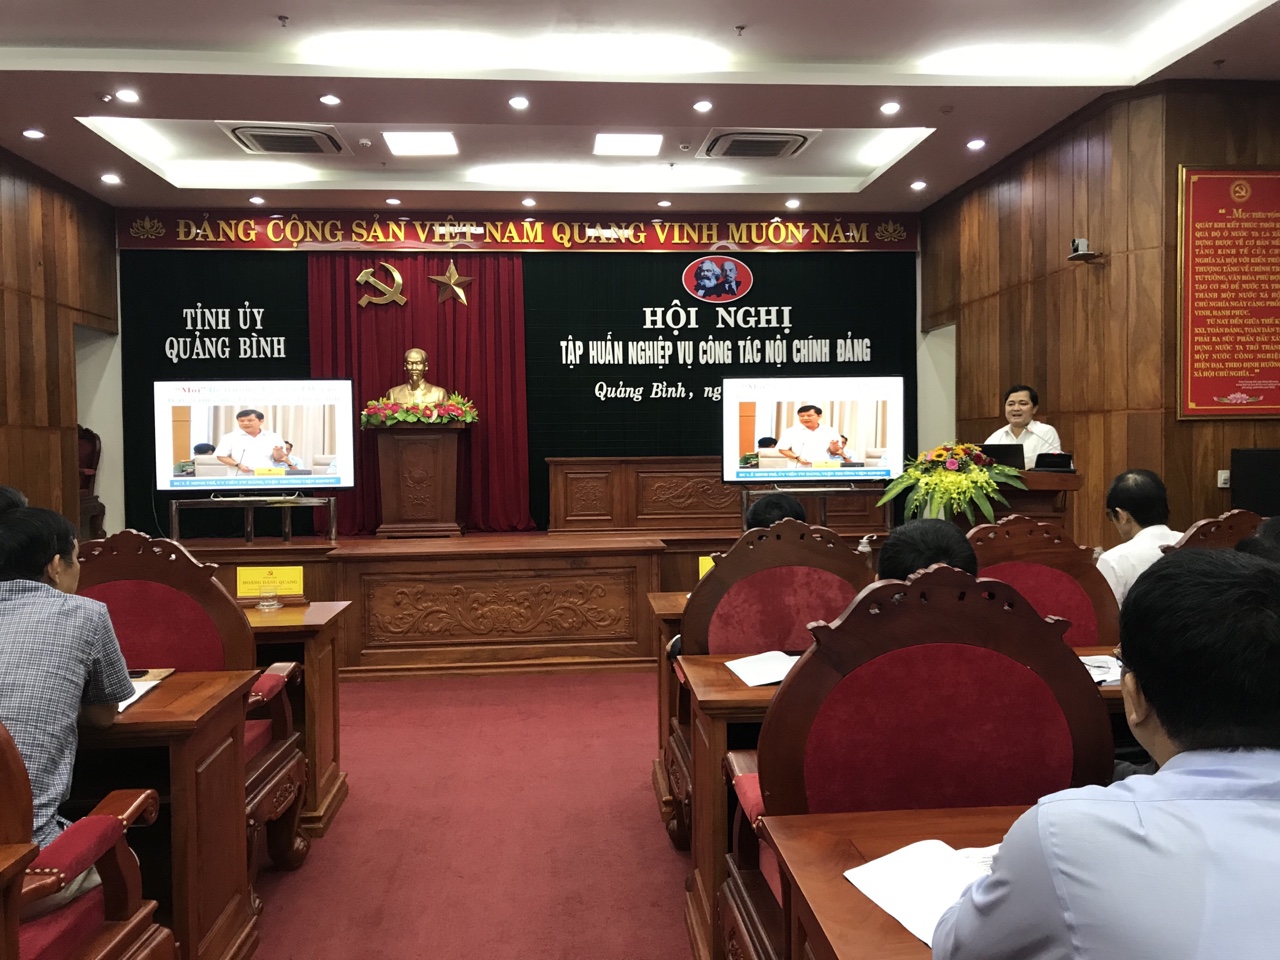 Đồng chí Nguyễn Xuân Trường, Vụ trưởng Vụ Địa phương, Ban Nội chính Trung ương truyền đạt Chuyên đề “Tổng quan về công tác nội chính Đảng”